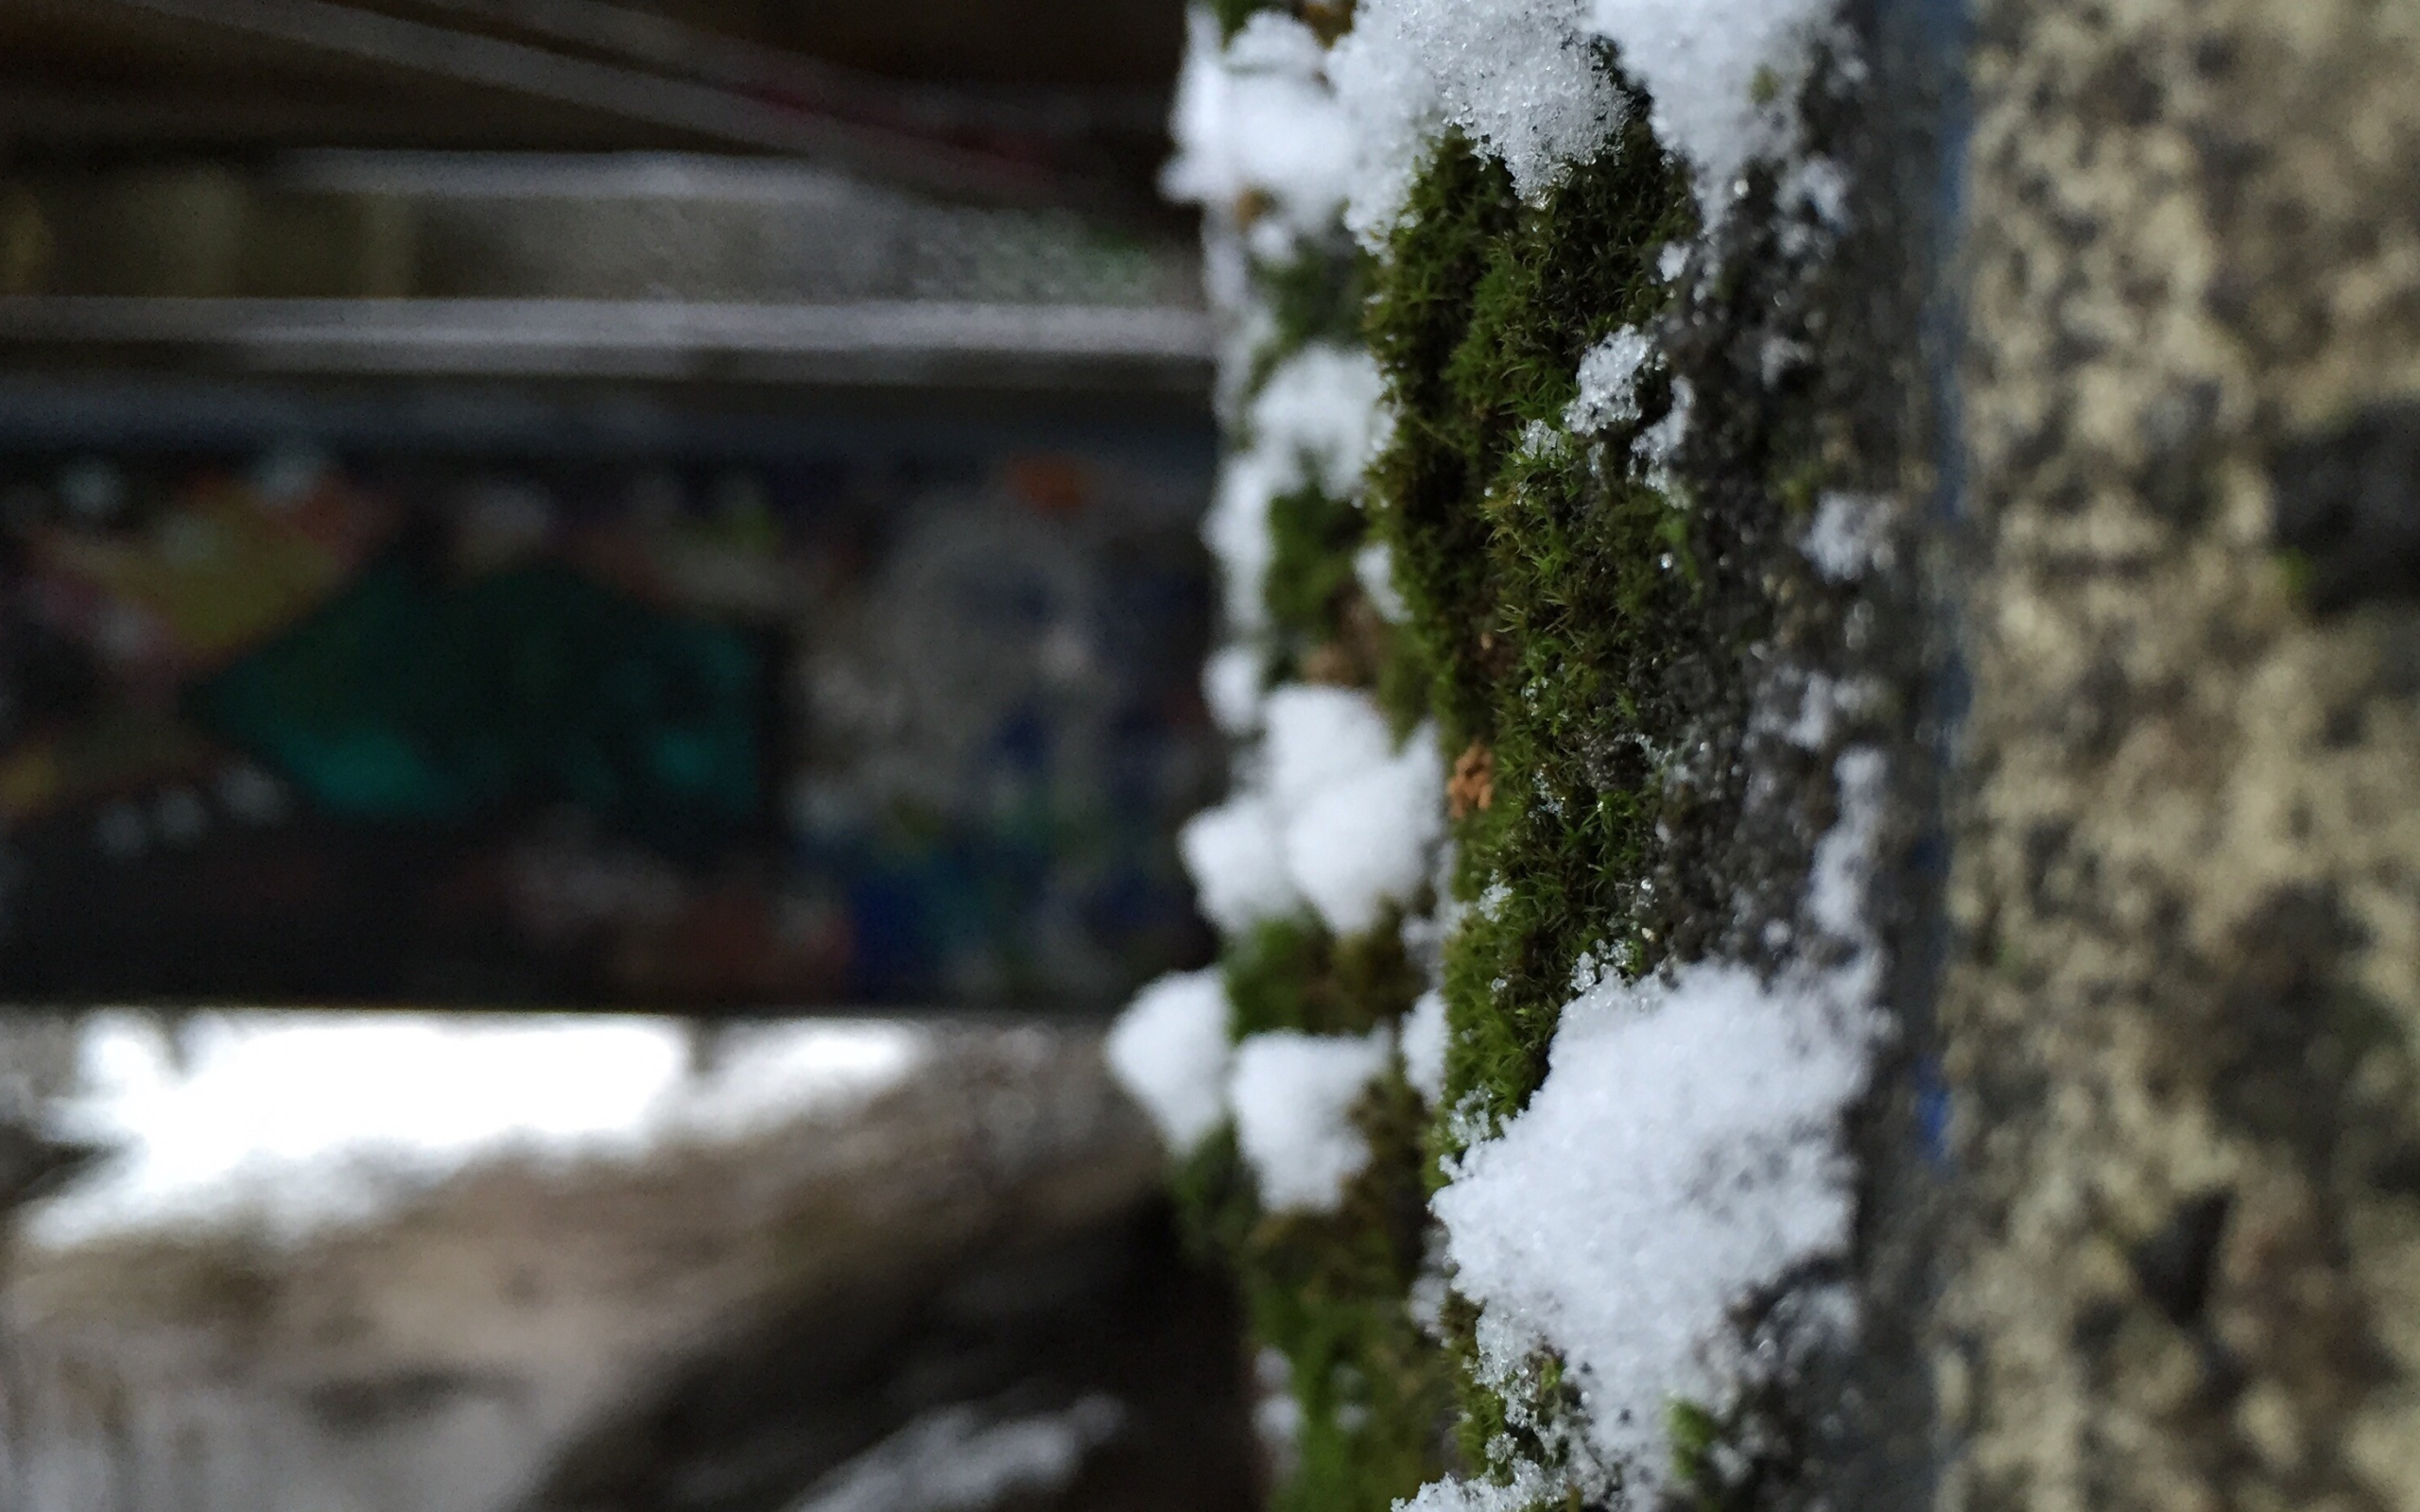 Снег на поросшей мхом стене